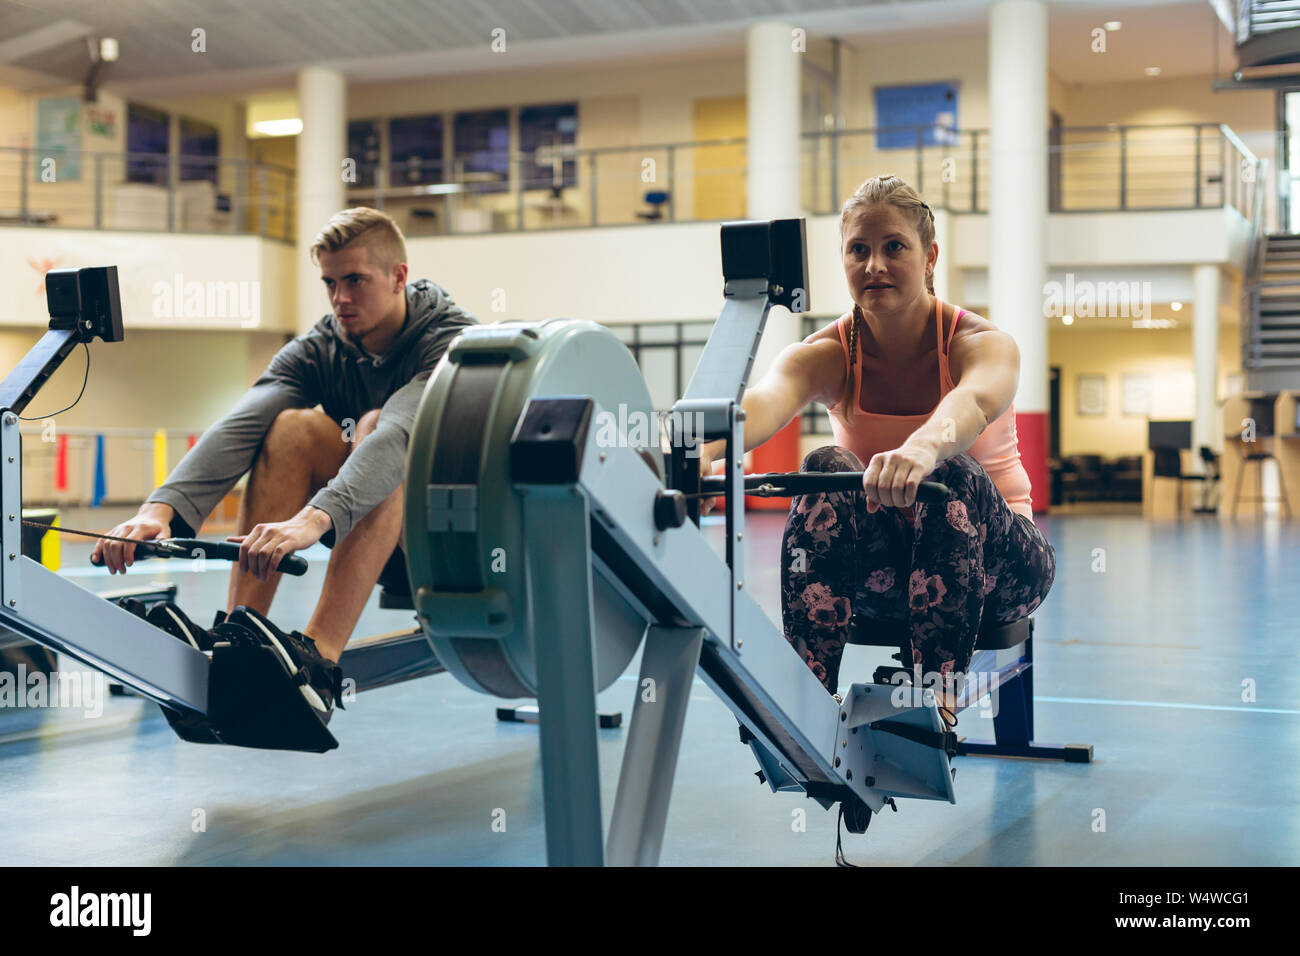 Athlète masculin et féminin s'entraîner avec le rowing machine in fitness studio Banque D'Images